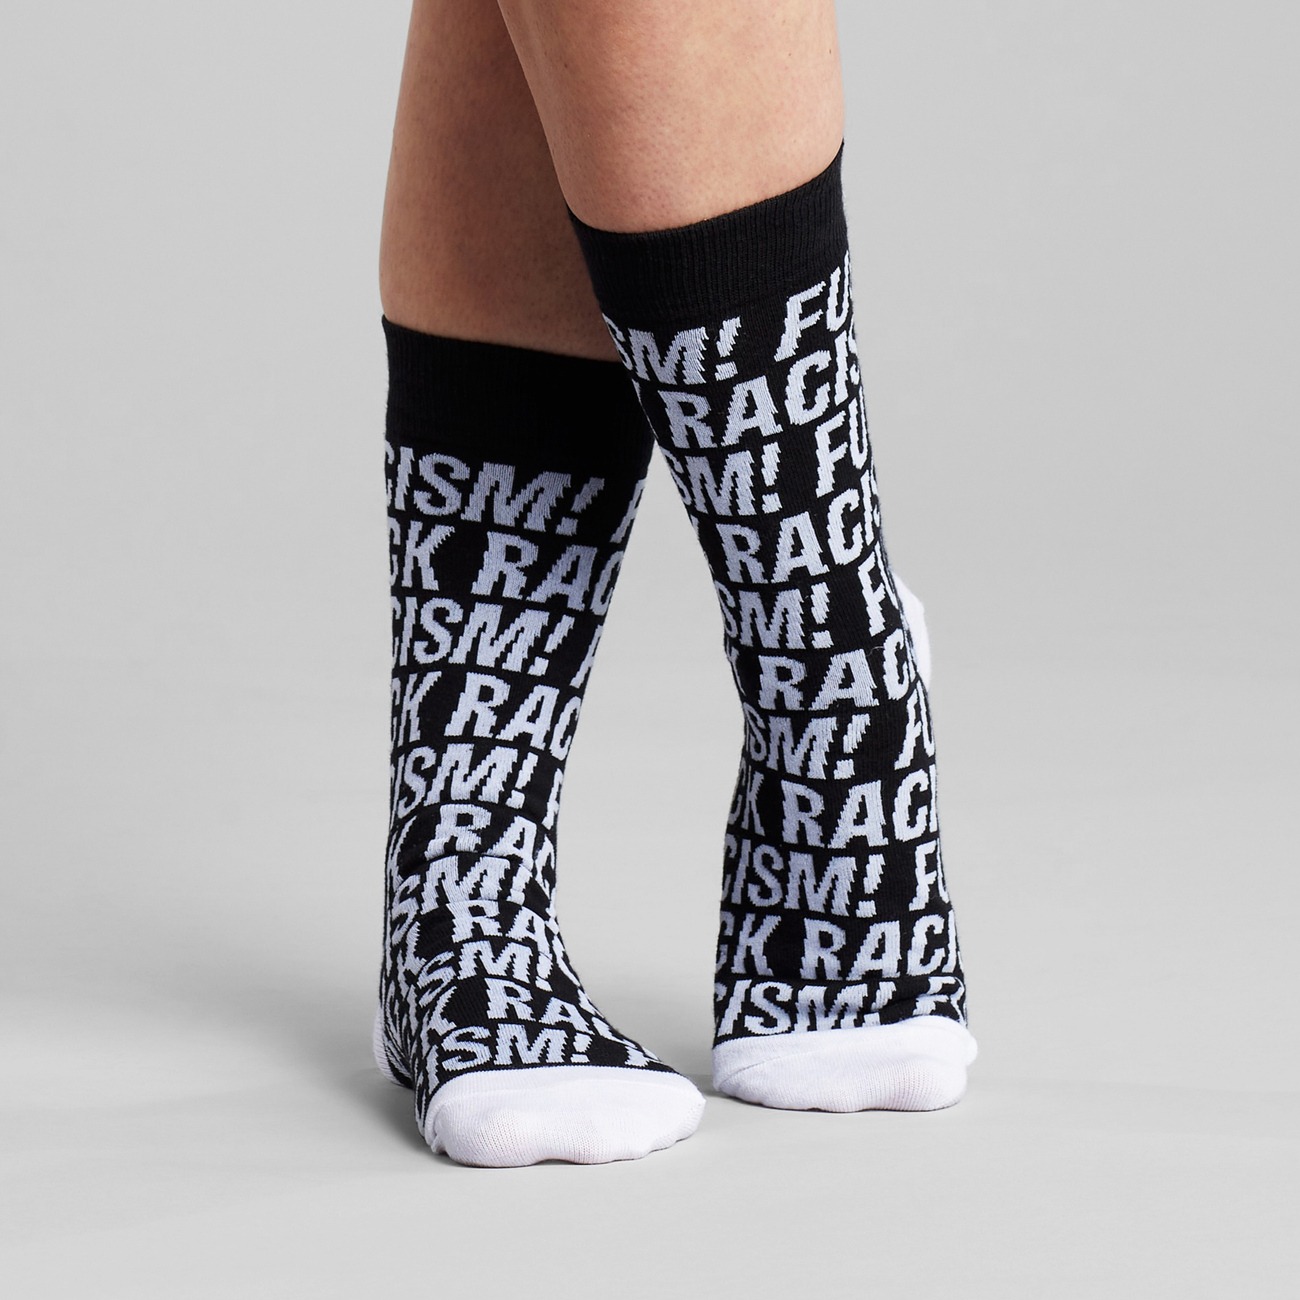 Socken mit Fuck Racism Slogan von Dedicated. Strümpfe aus Bio-Baumwolle in Schwarz mit weißem Muster.